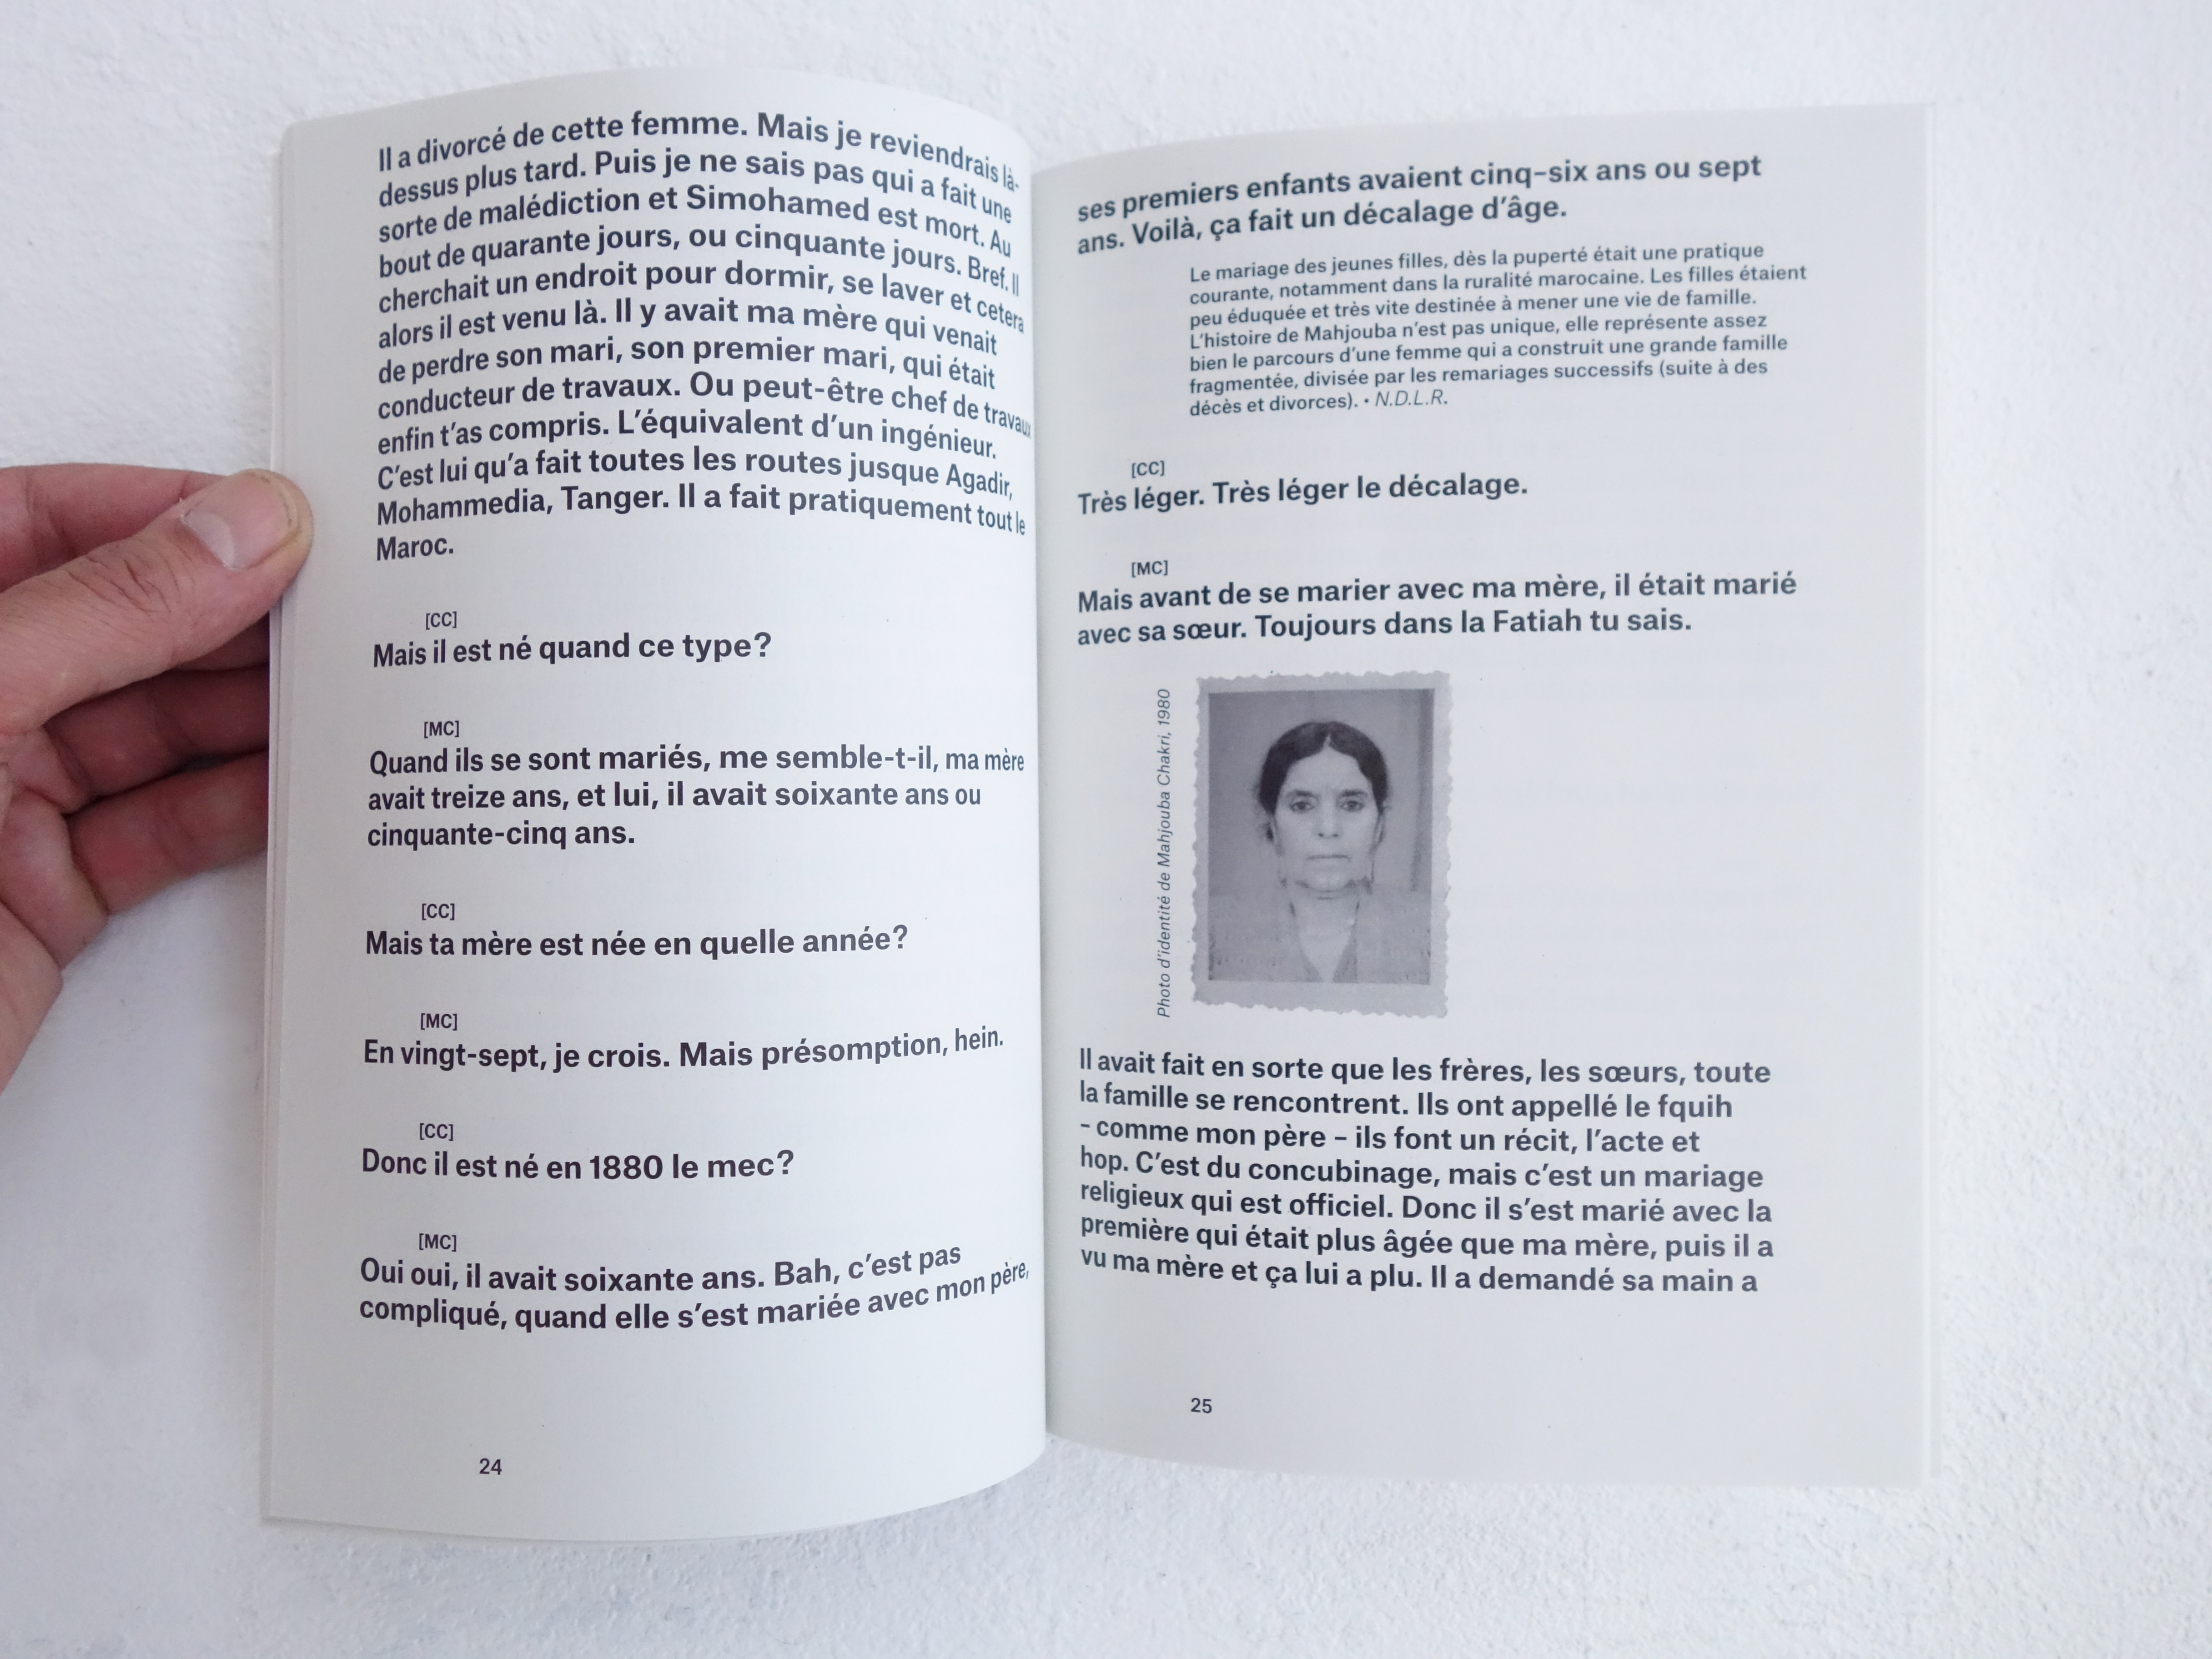 Clara Chakri - 2022 - Édition autour d'un objet "le permis de conduire de mon père" Prétexte à une réflexion sur les origines et l'identité.